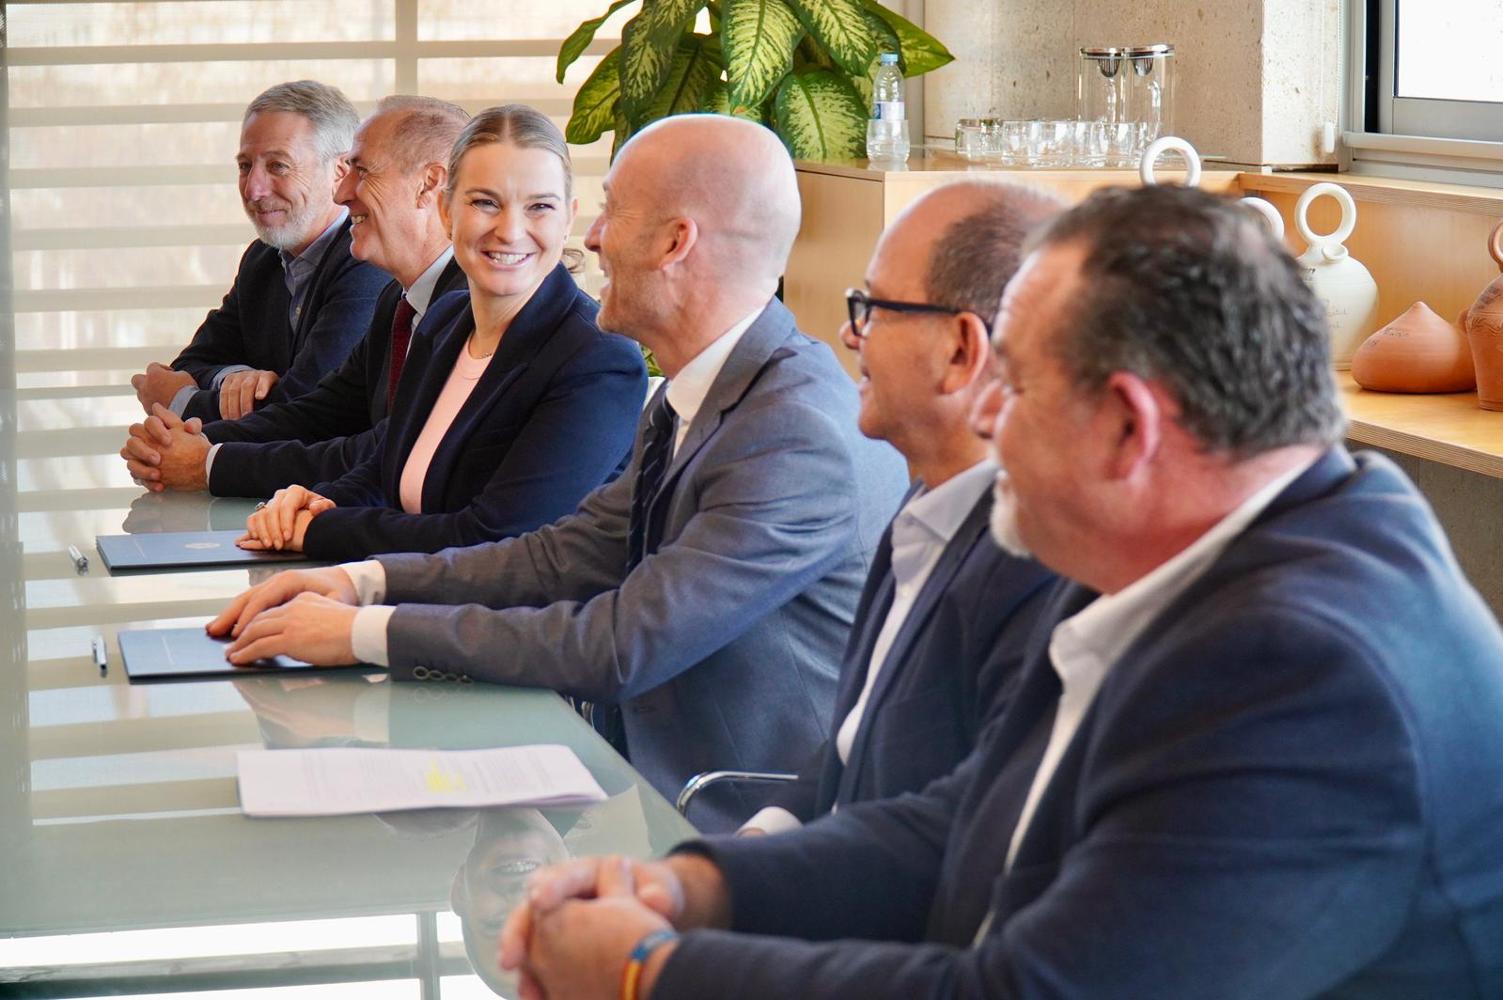 Imagen del artículo Prohens firma la transferencia de 2,47 millones de euros al Consell Insular de Menorca por el Pacto por el Agua y presenta el proyecto de la depuradora de Sant Lluís por 5,7 millones